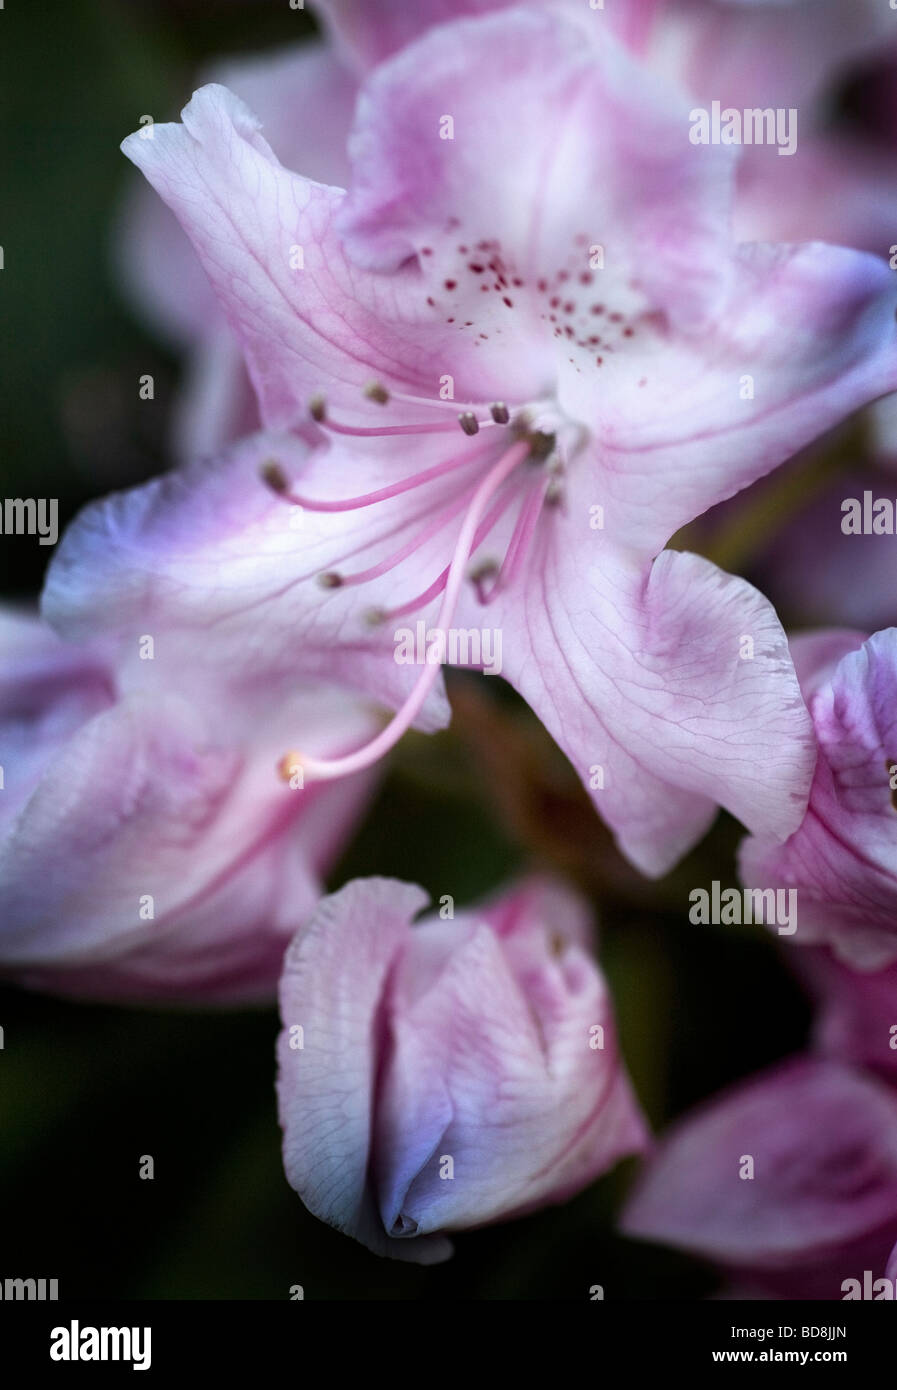 Irises, Stock Photo